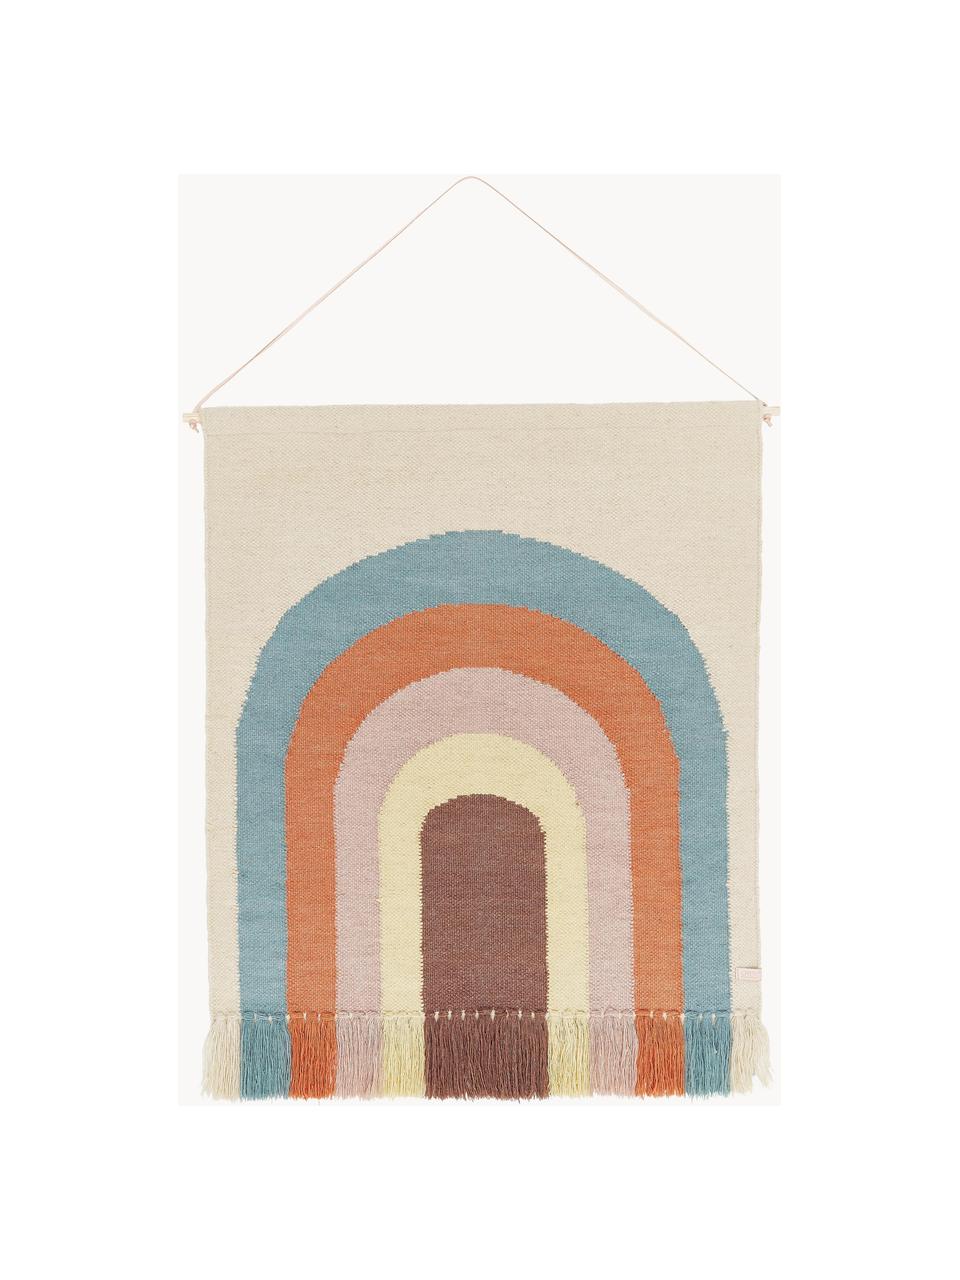 Großes Wandobjekt Rainbow, 80% Wolle, 20% Baumwolle, Bunt, B 100 x H 124 cm